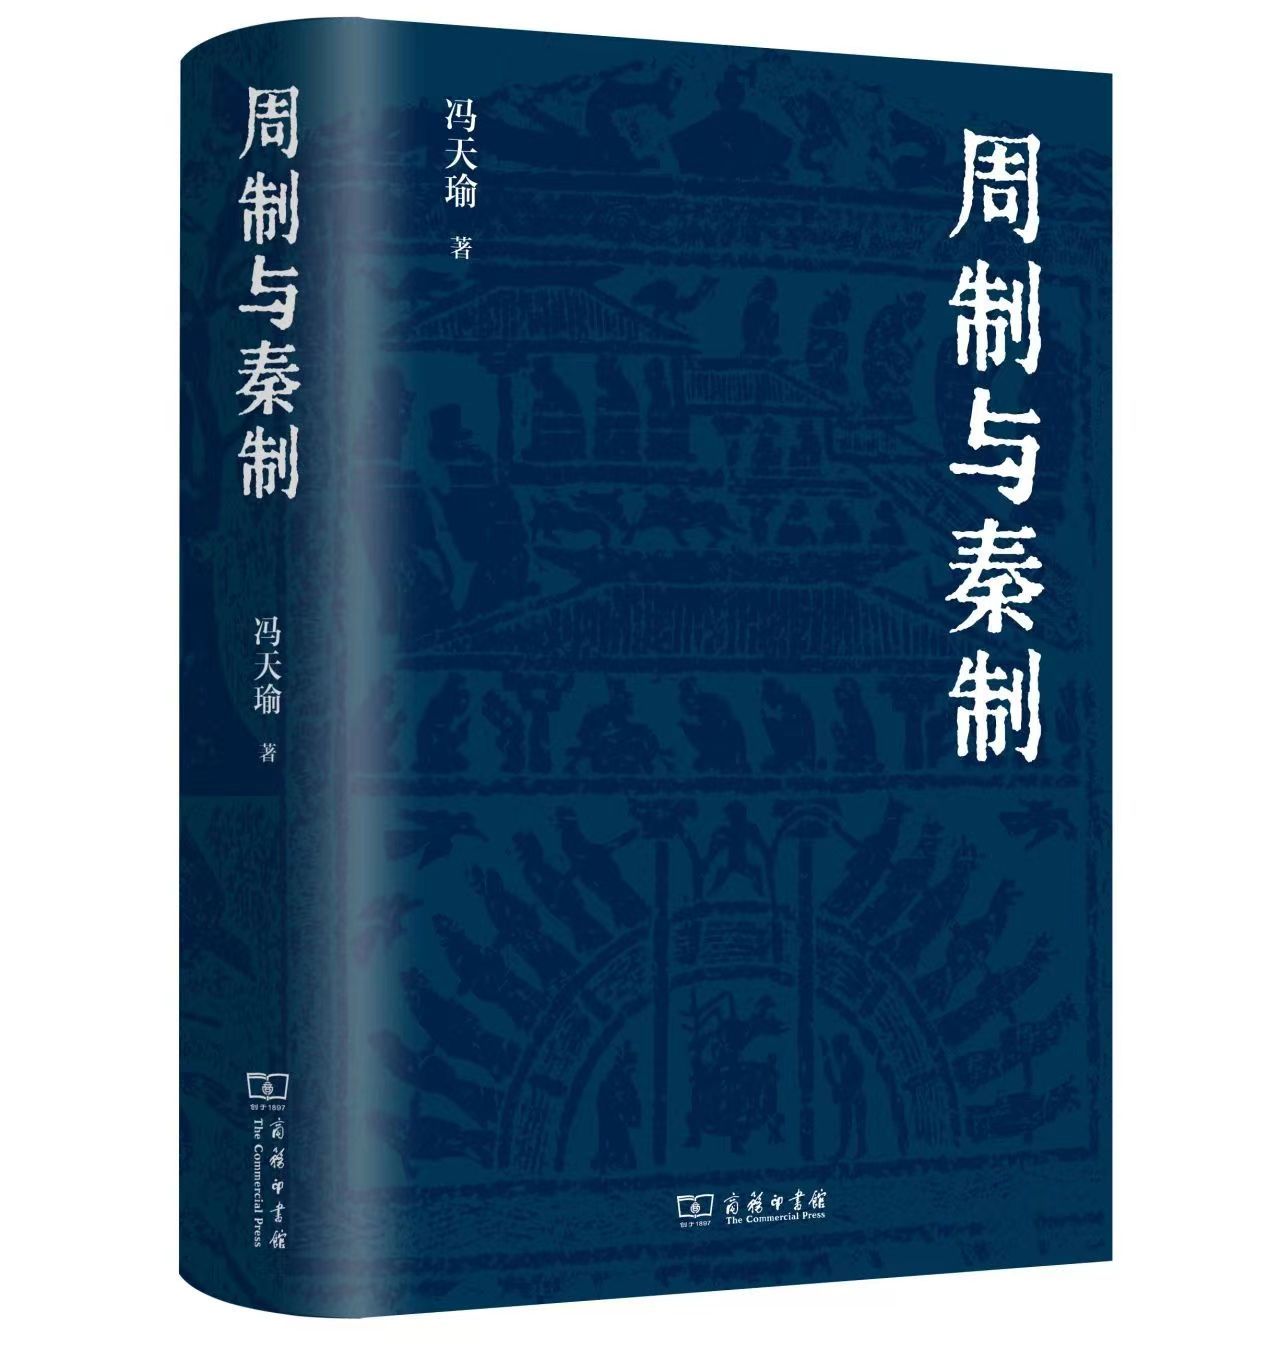 制度文化史学术研讨会暨冯天瑜教授新书发布会举行